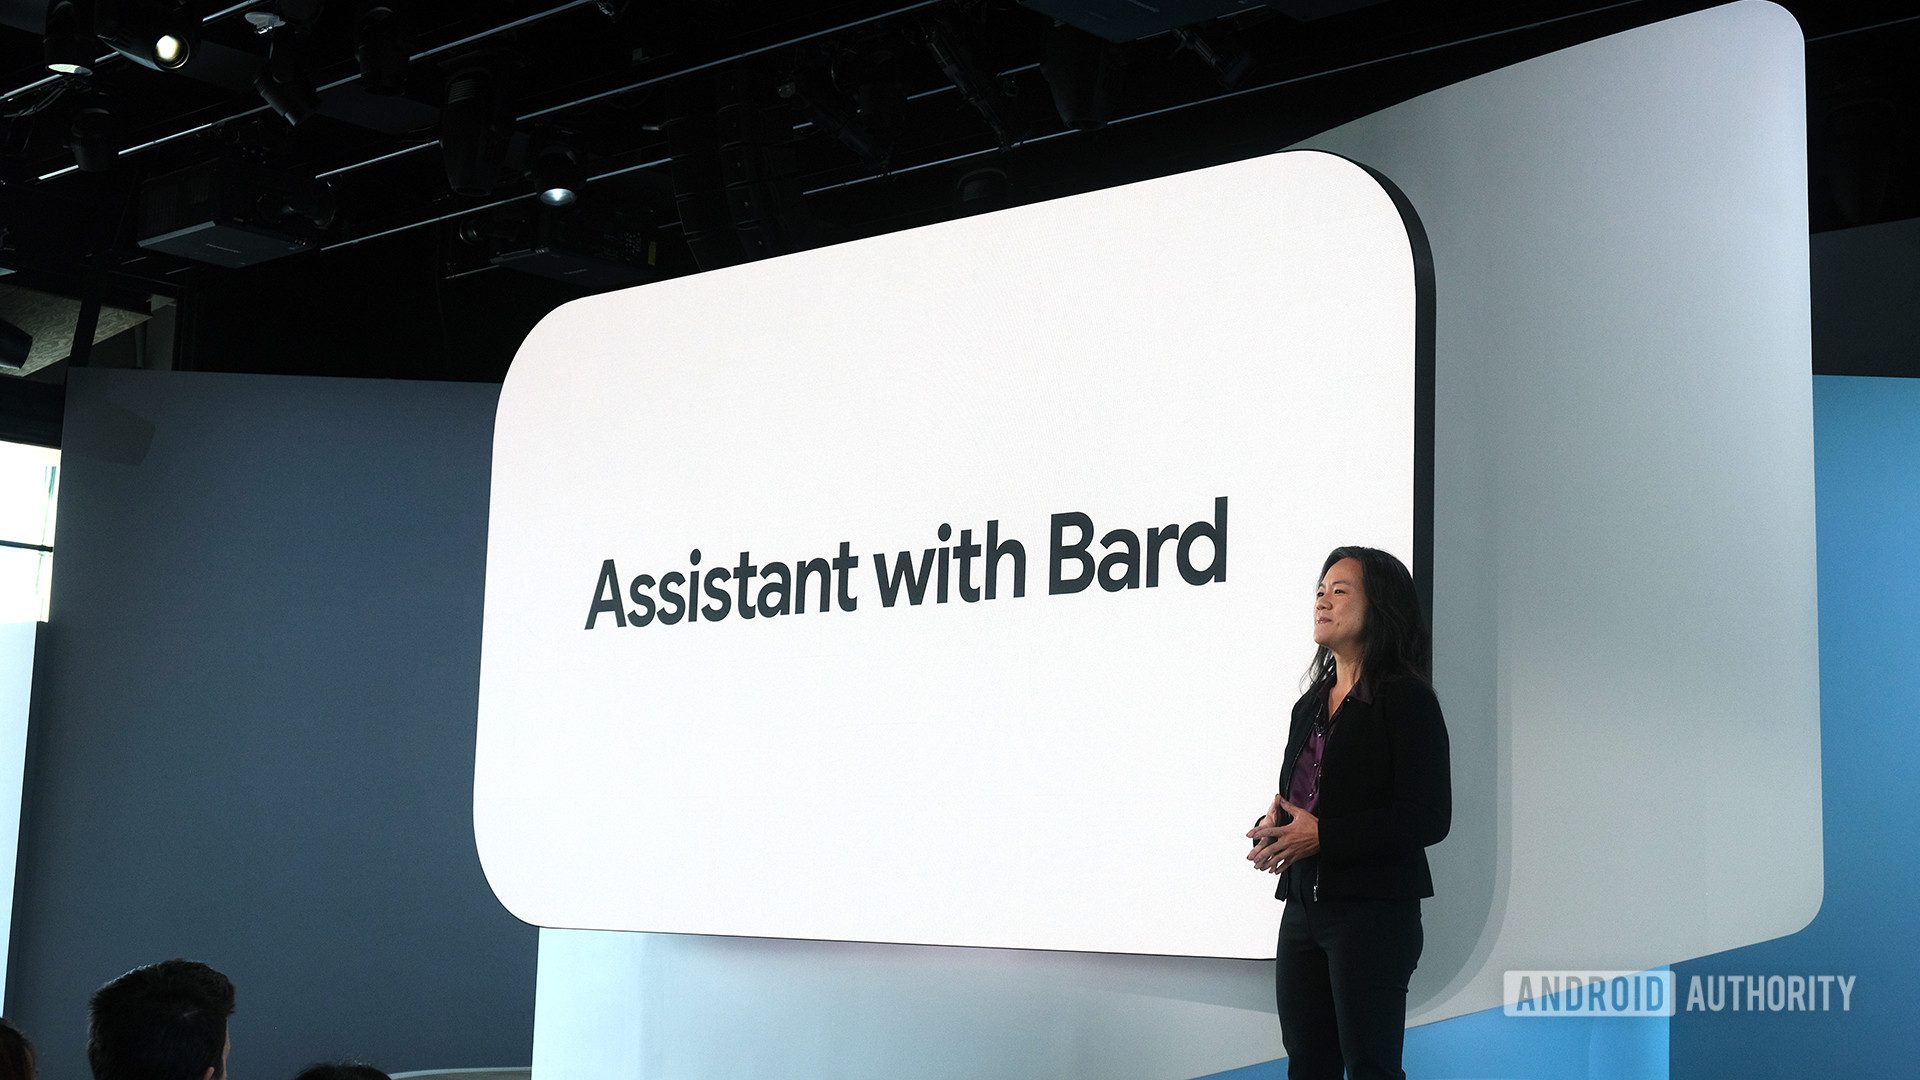 Teardown, Bard’lı Asistan’ın Android sürümüne yaklaştığını ortaya koyuyor